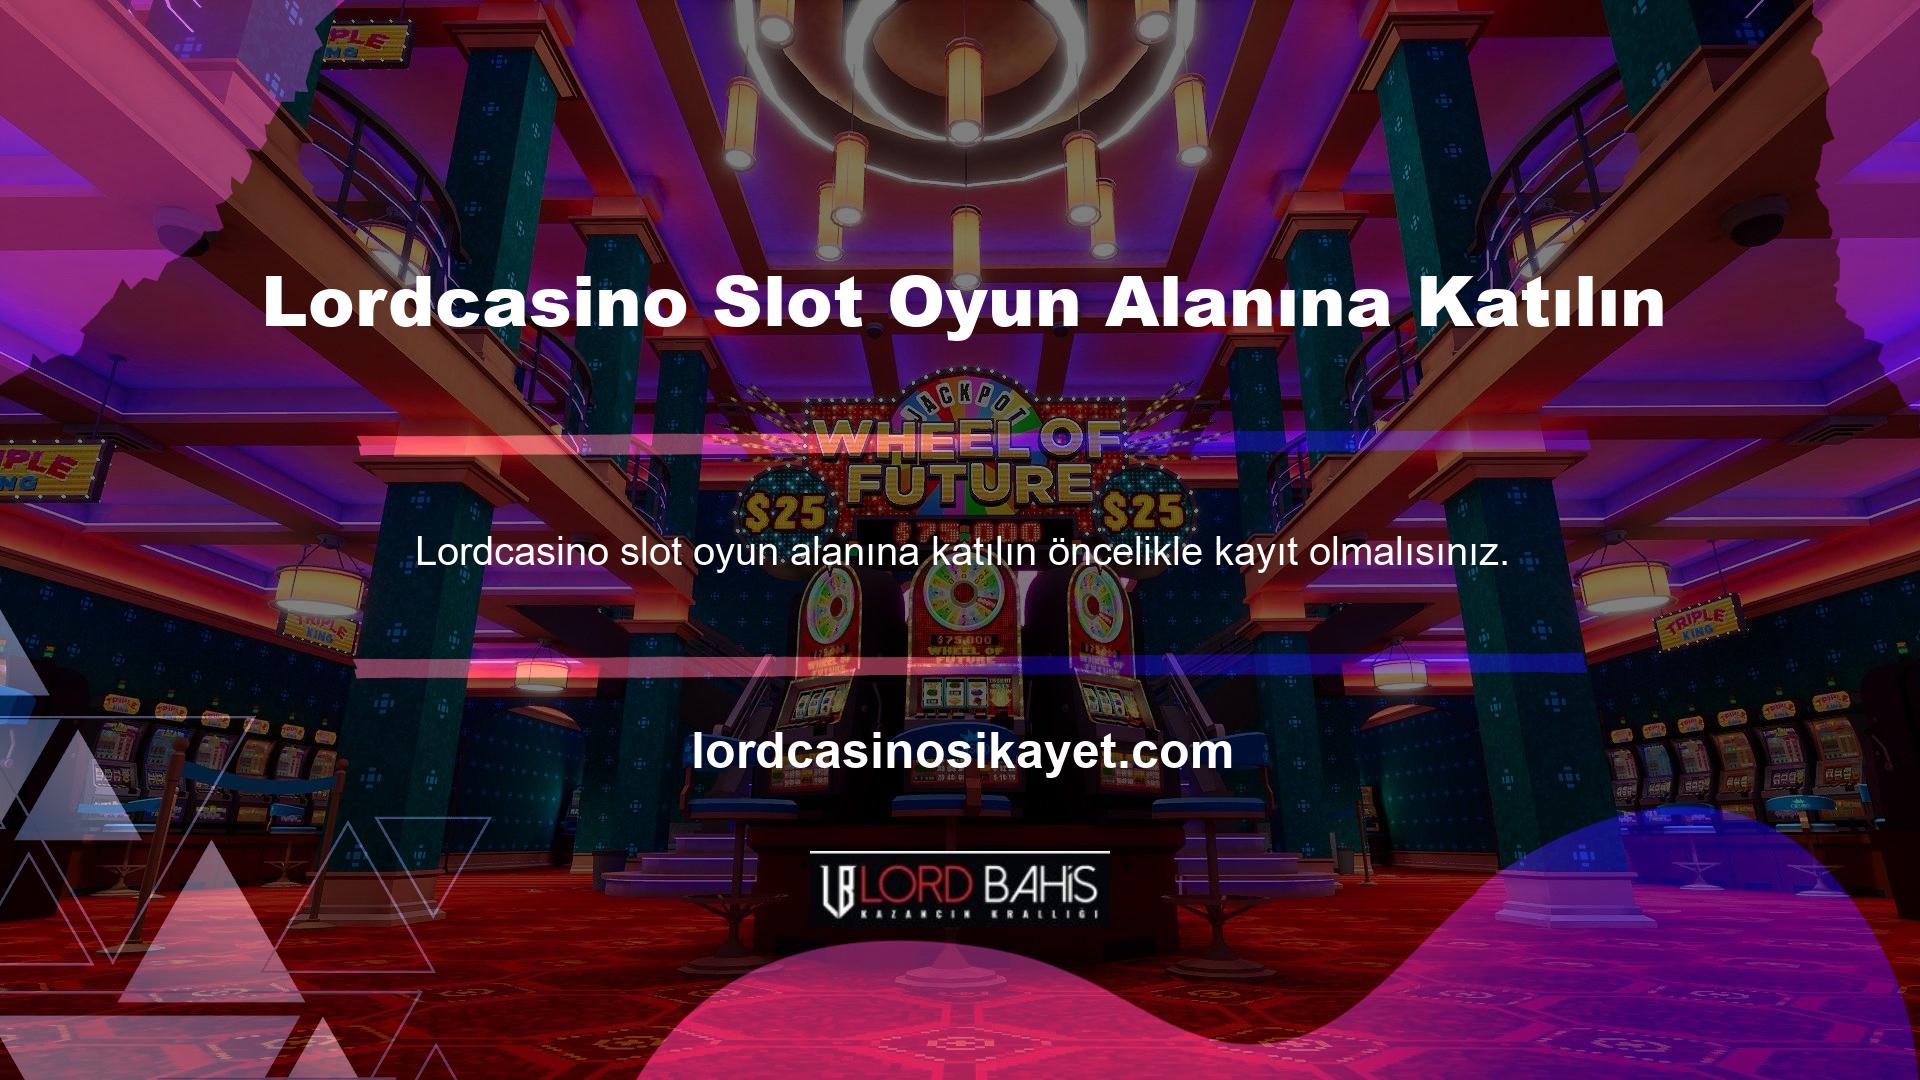 Eğer siteye ait hesap bilgileriniz yoksa Lordcasino Slots bölümüne girip üye alanına gitmeniz gerekecektir